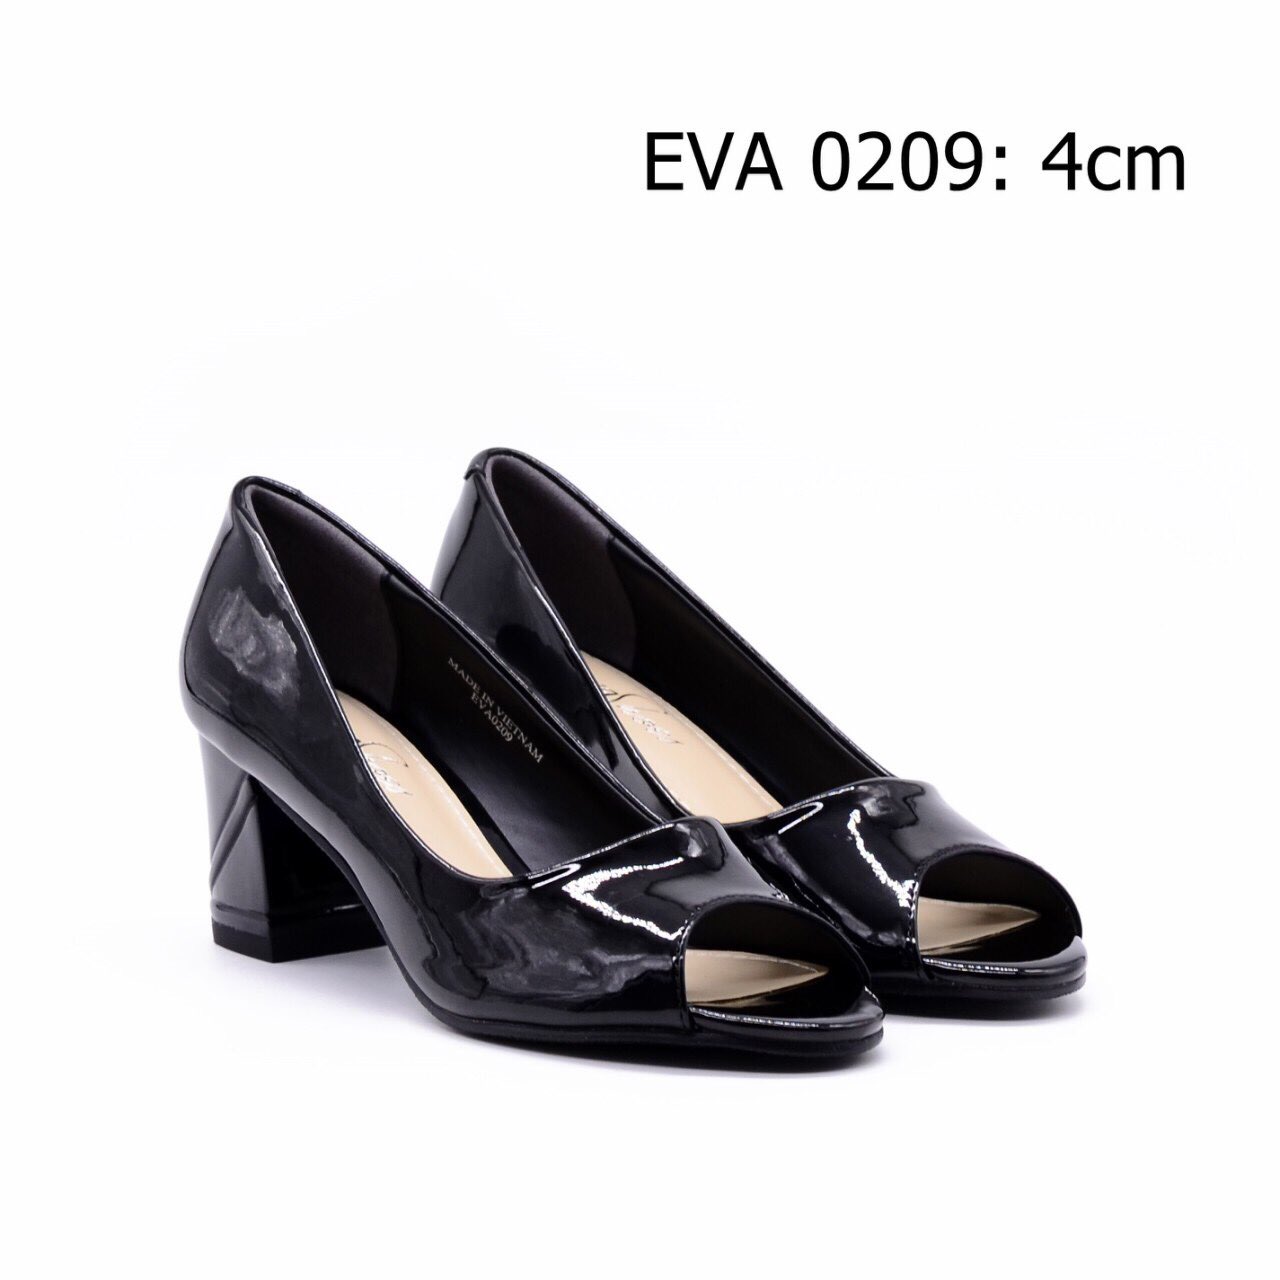 Giày công sở gót vuông EVA0209 kiểu dáng hở mũi thoáng mát, da bóng sang trọng.